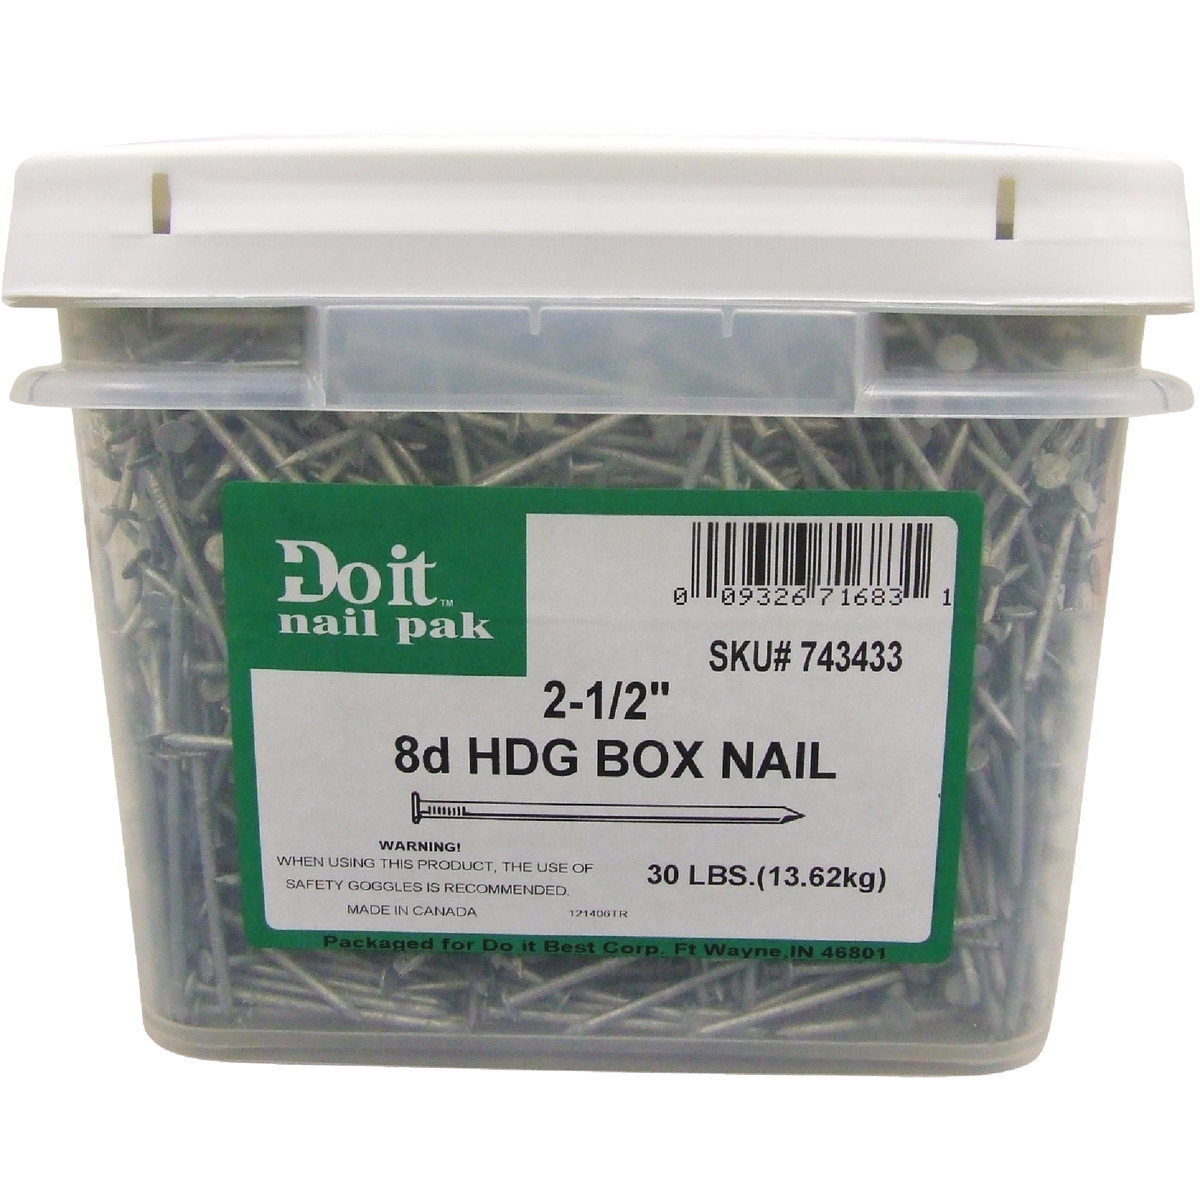 Box Nails